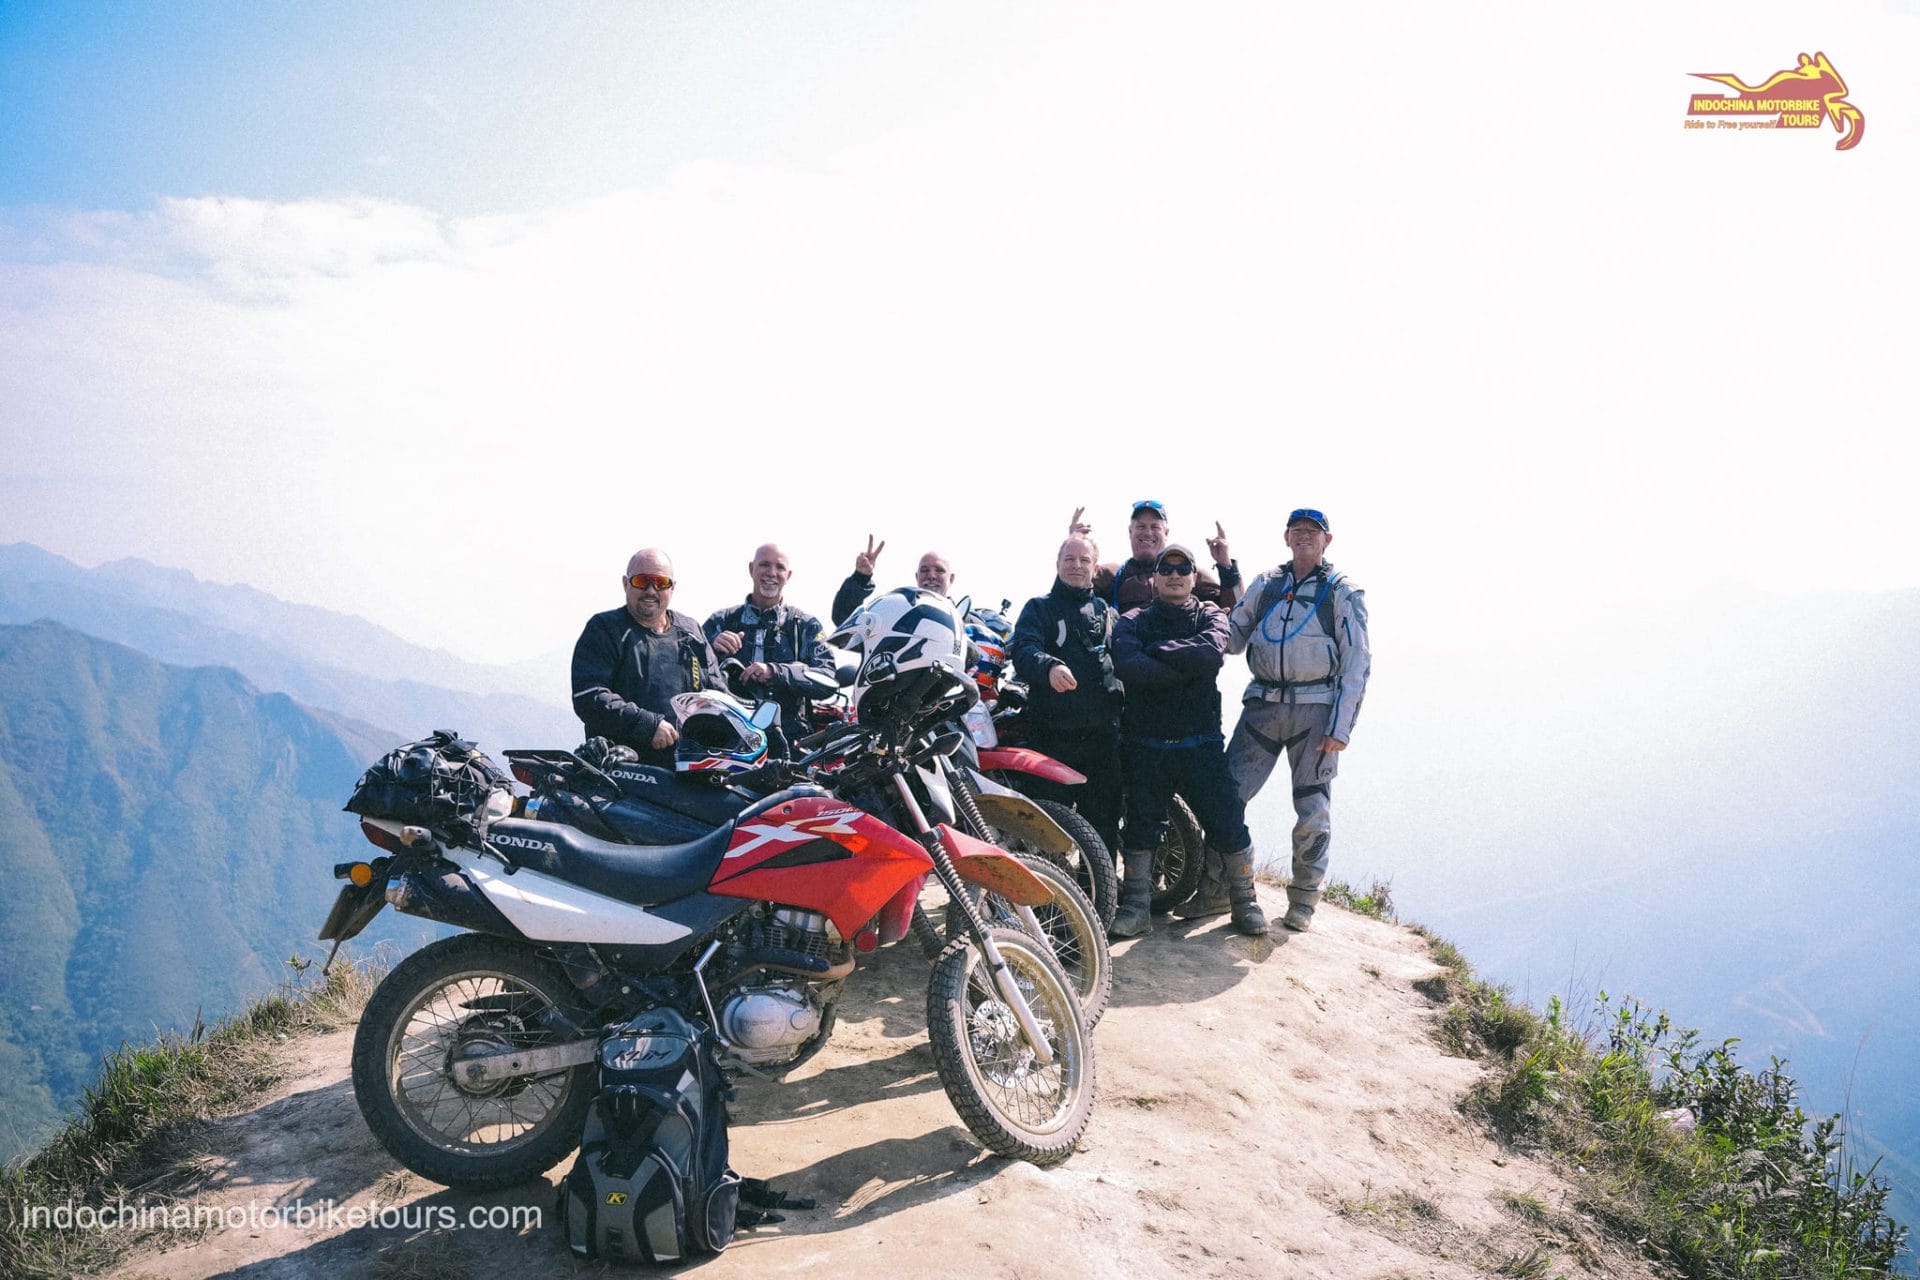 Northern Vietnam Dirt Bike Tour to Ha Giang, Sapa, Yen Bai, Son La, Lai Chau